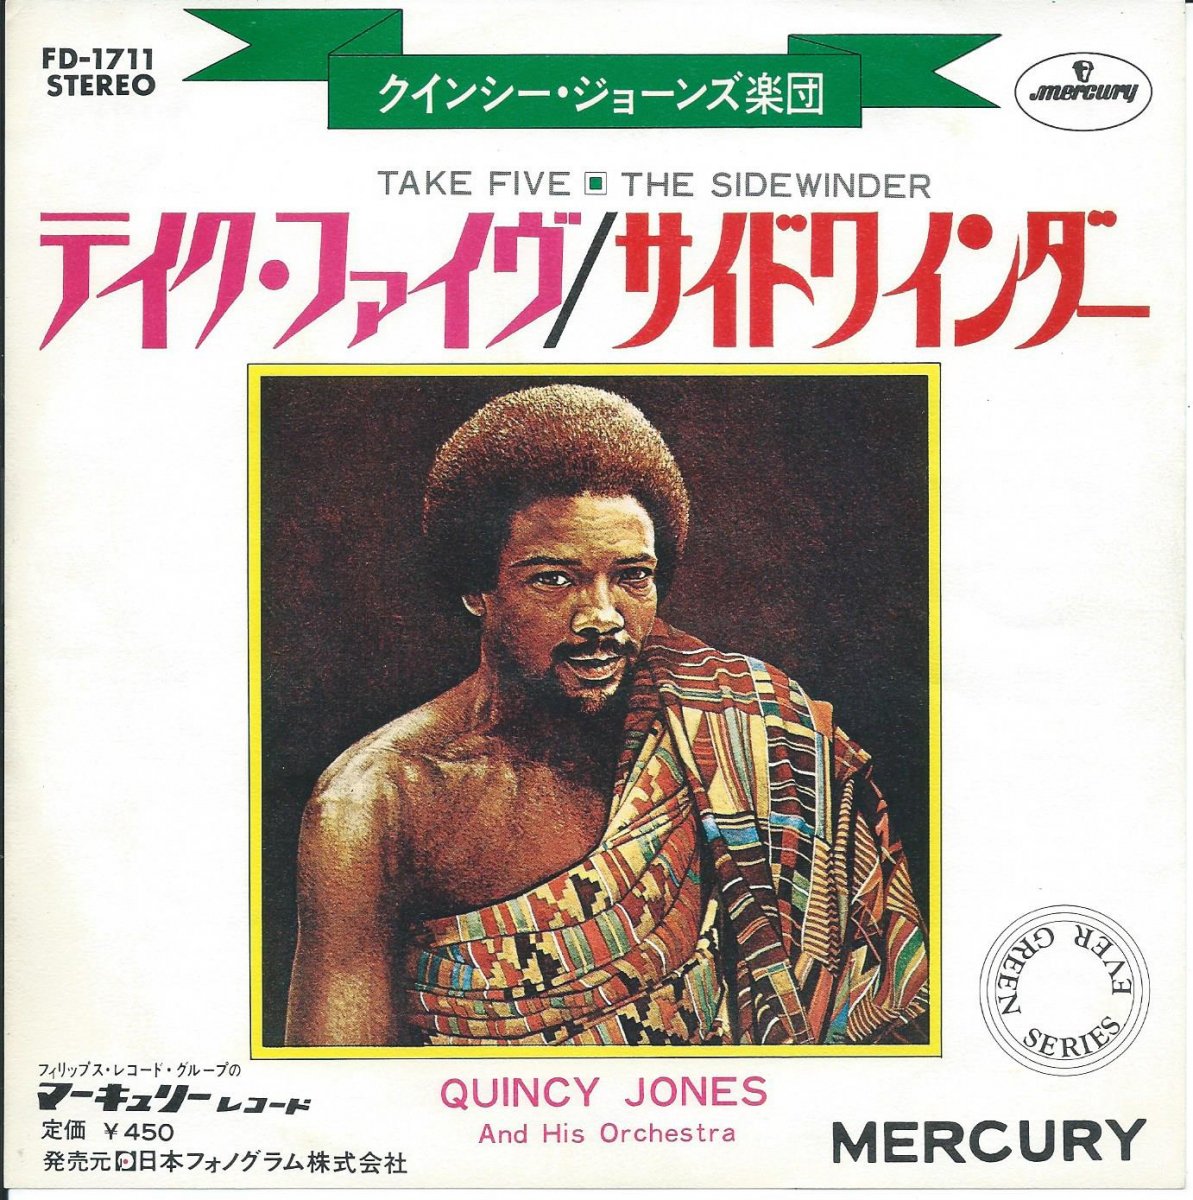 クインシー・ジョーンズ楽団 QUINCY JONES AND HIS ORCHESTRA / テイク ...